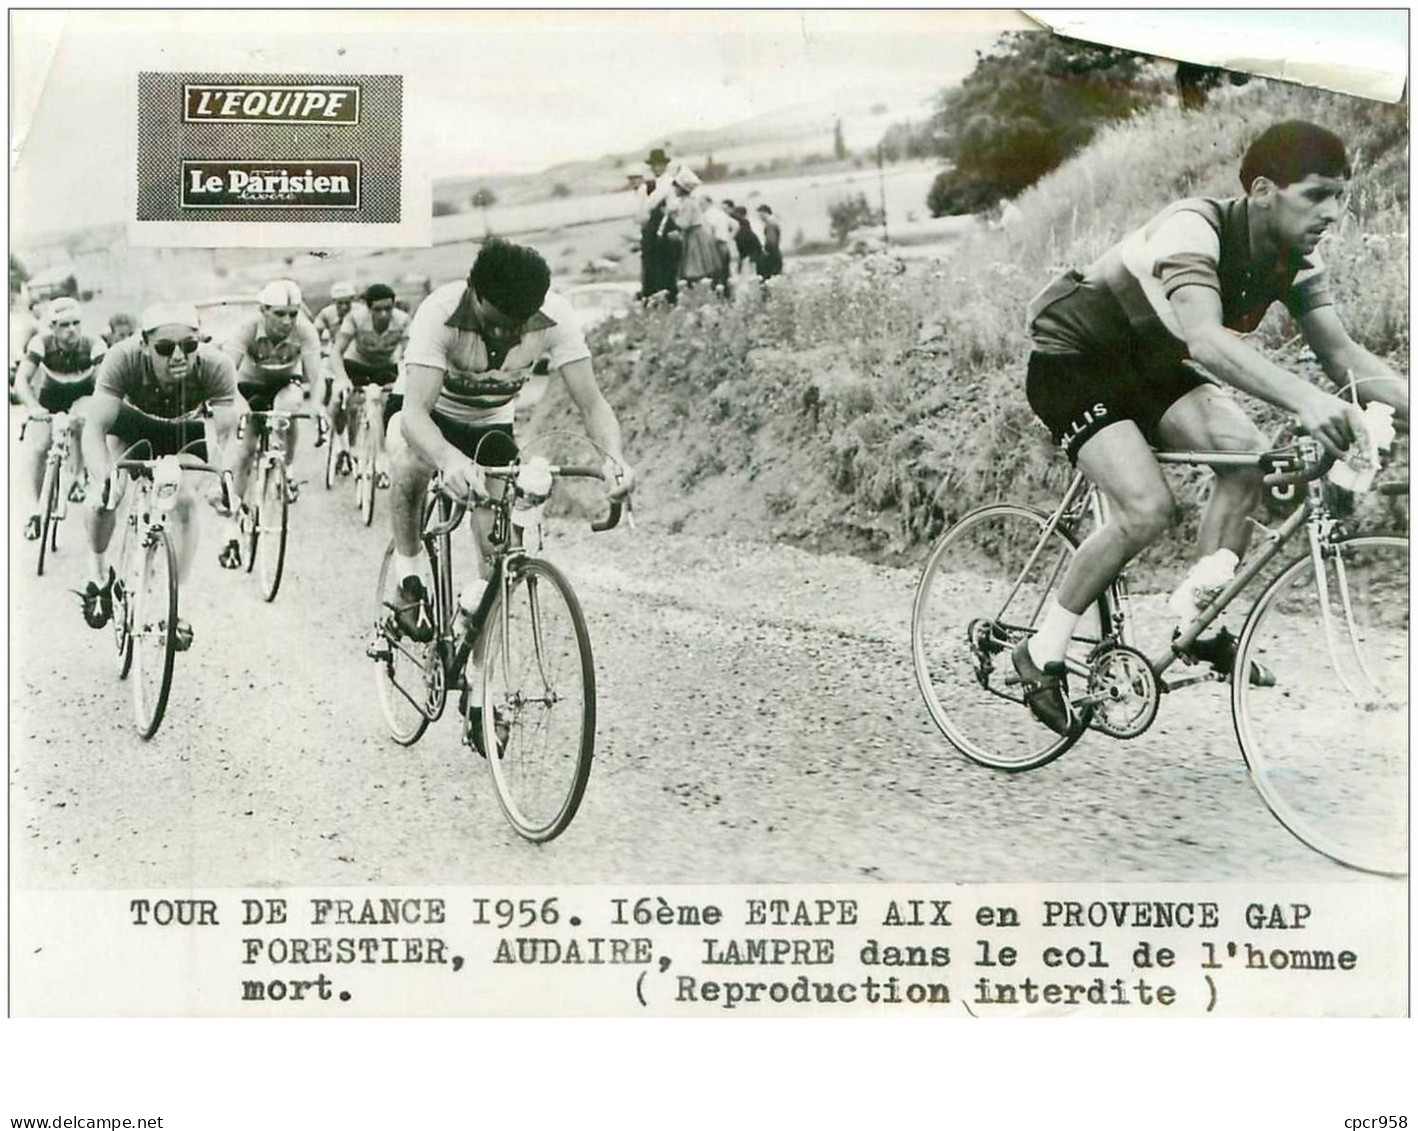 PHOTO DE PRESSE ORIGINALE TOUR DE FRANCE 1956.20X15.16eme ETAPE AIX EN PROVENCE GAP.FORESTIER,AUDAIRE,LAMPRE DAN.n°18695 - Cycling